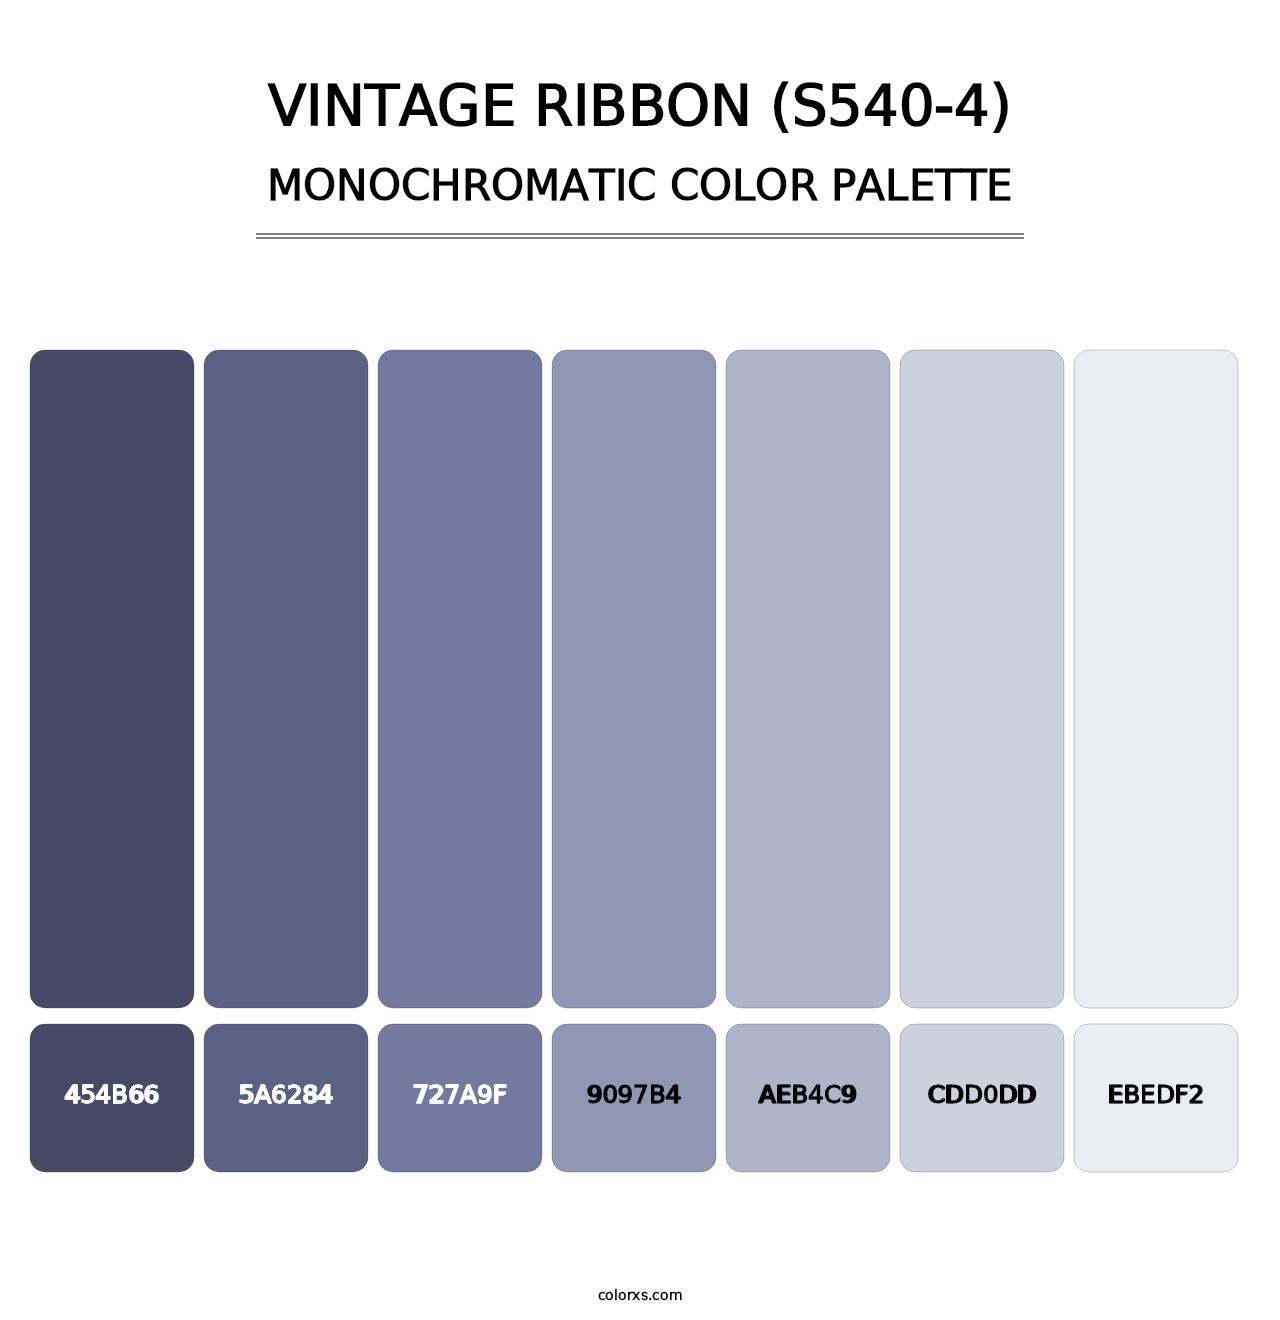 Vintage Ribbon (S540-4) - Monochromatic Color Palette